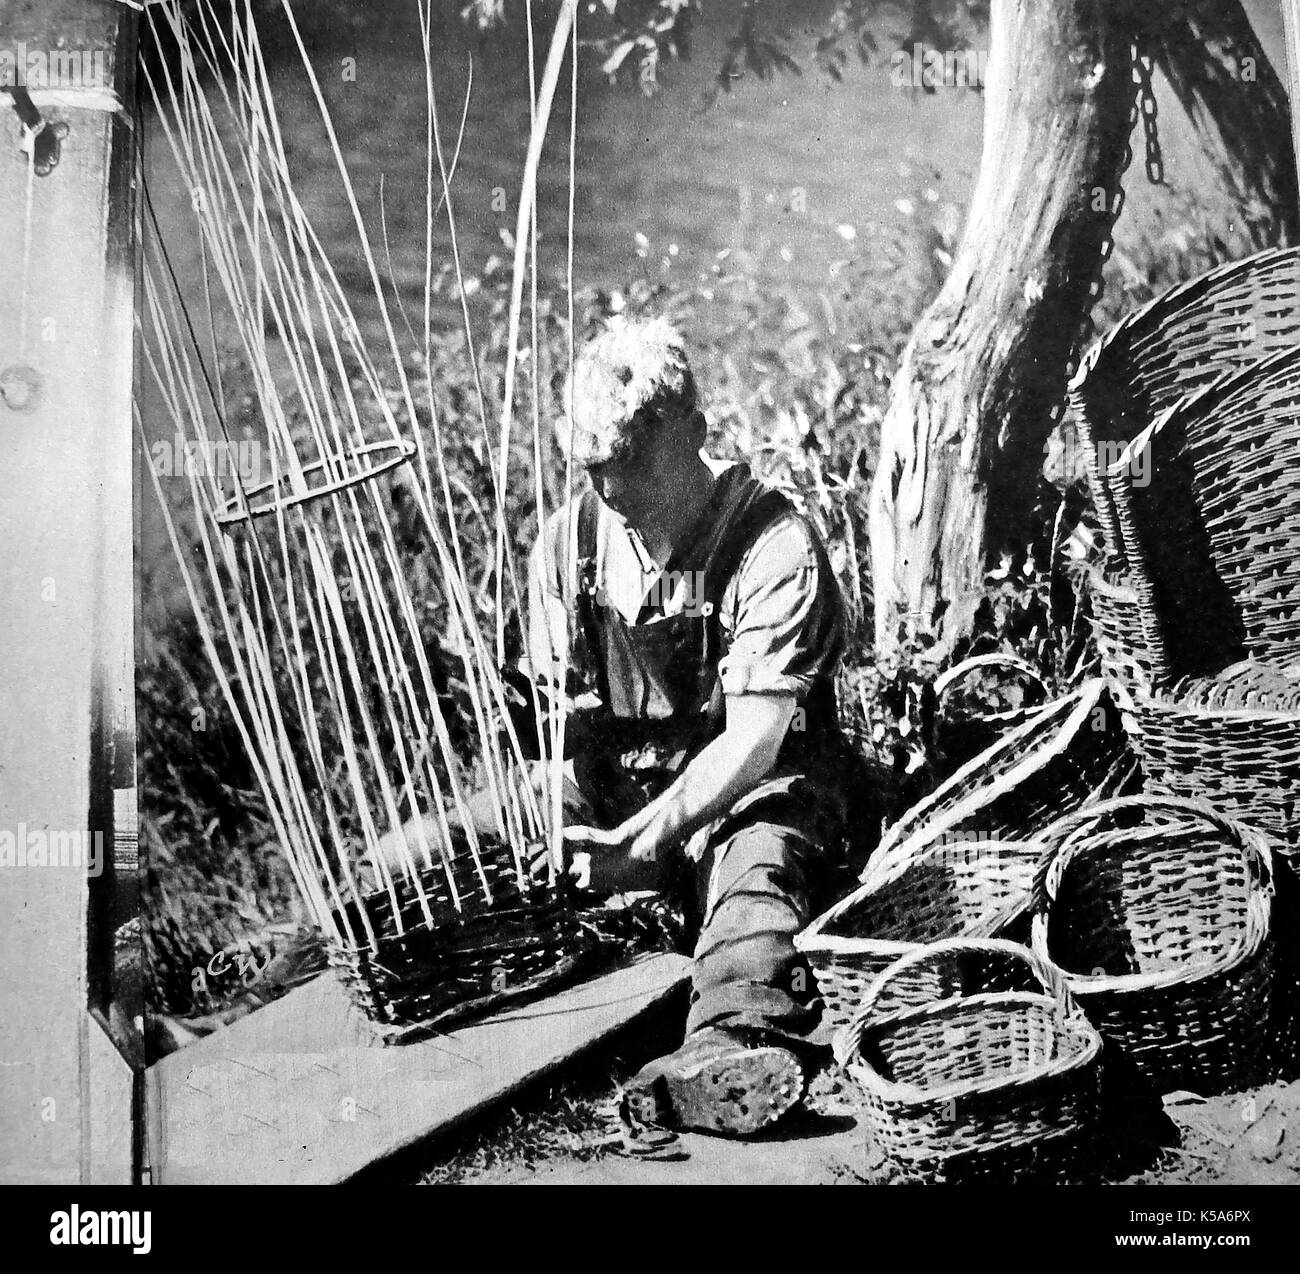 Un pays britannique (osier artisan Weaver) faire des paniers - 1930 photographie. Banque D'Images